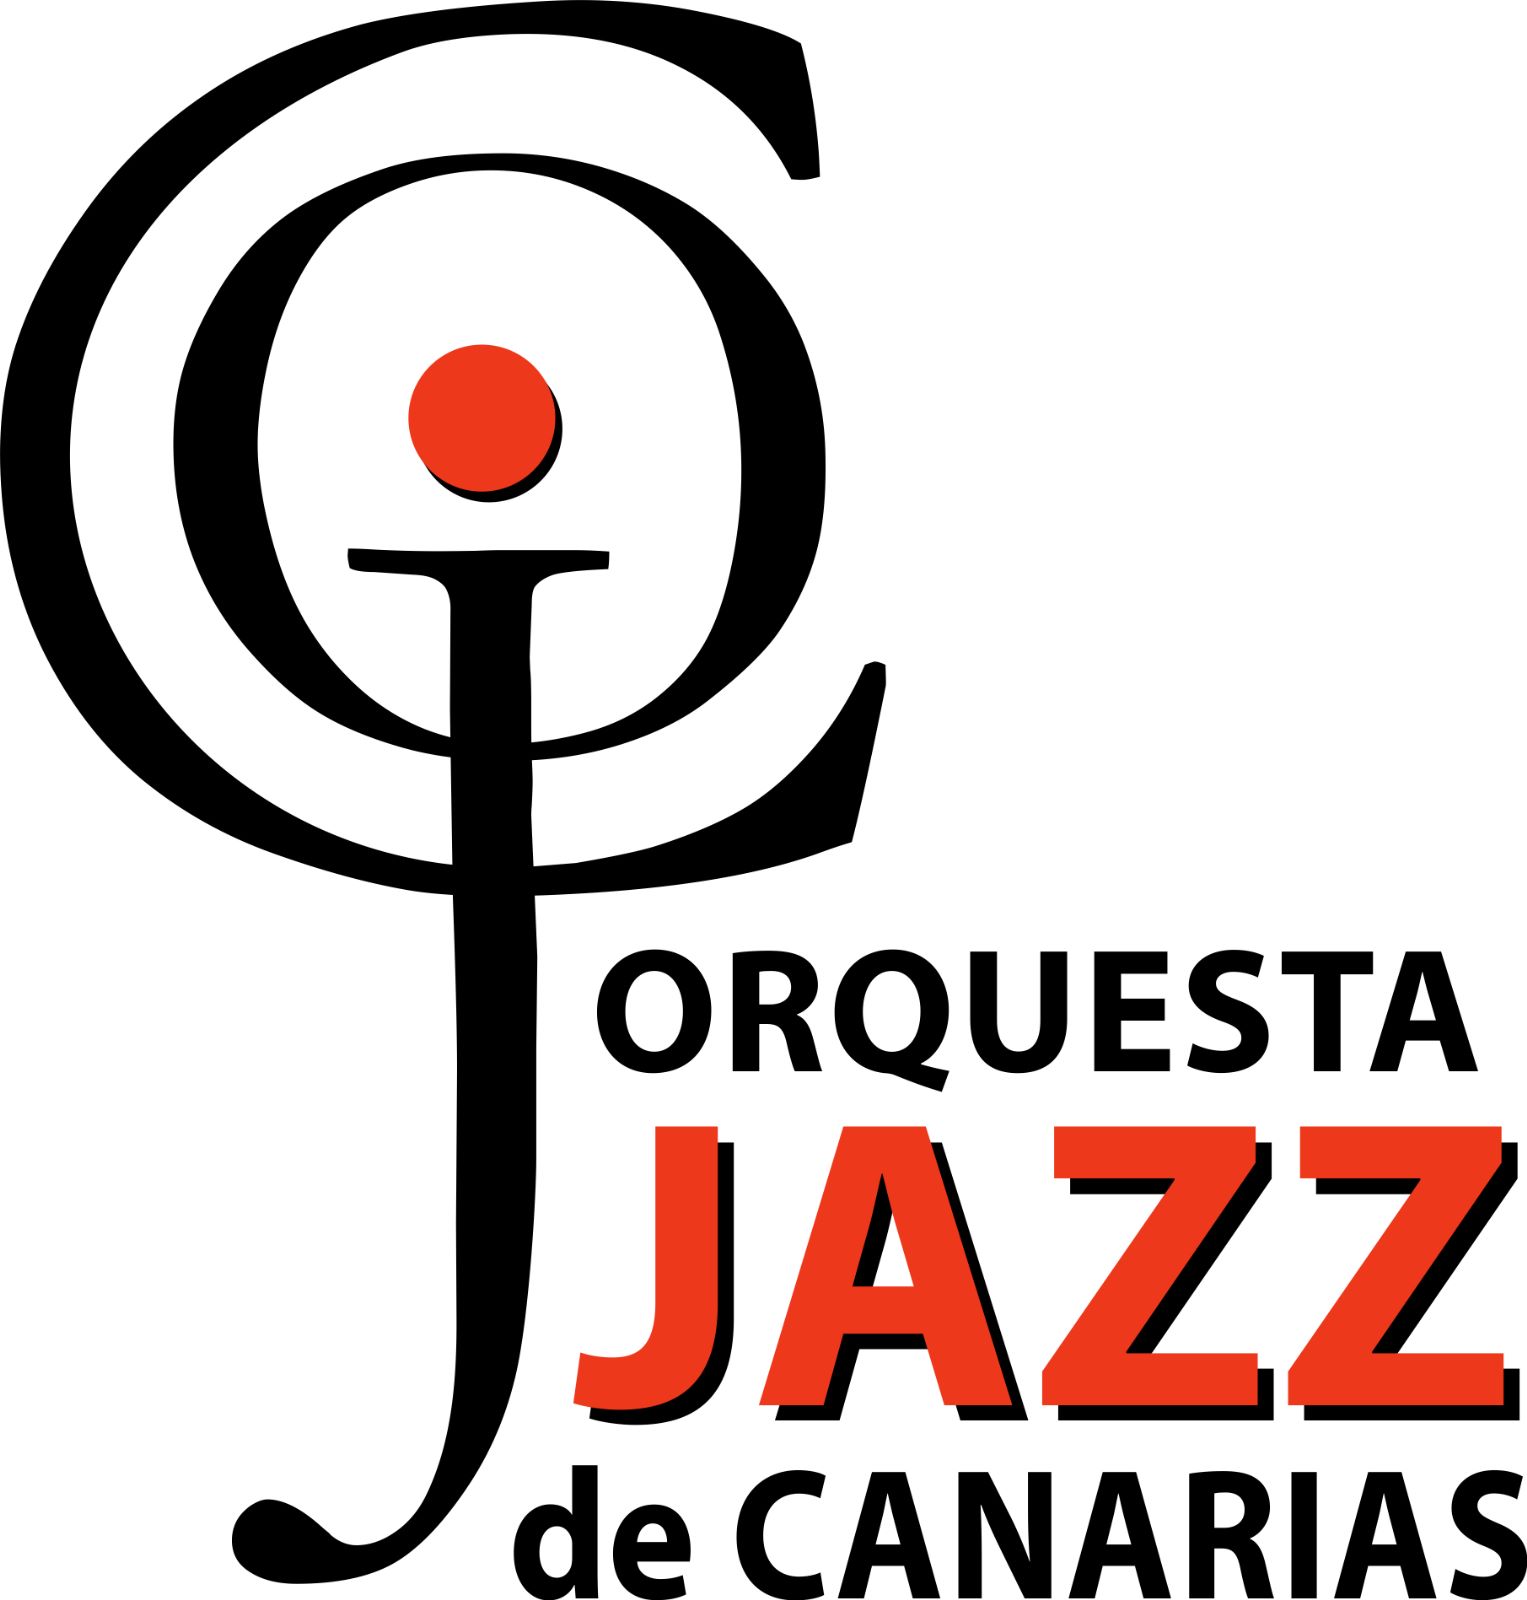 Orquesta Jazz De Canarias, grupo musical en Tenerife. Talleres artísticos en Tacoronte. Espectáculos musicales en El Sauzal. Actuaciones musicales en La Laguna. Espectáculos con actores en Santa Cruz. Tenerife.